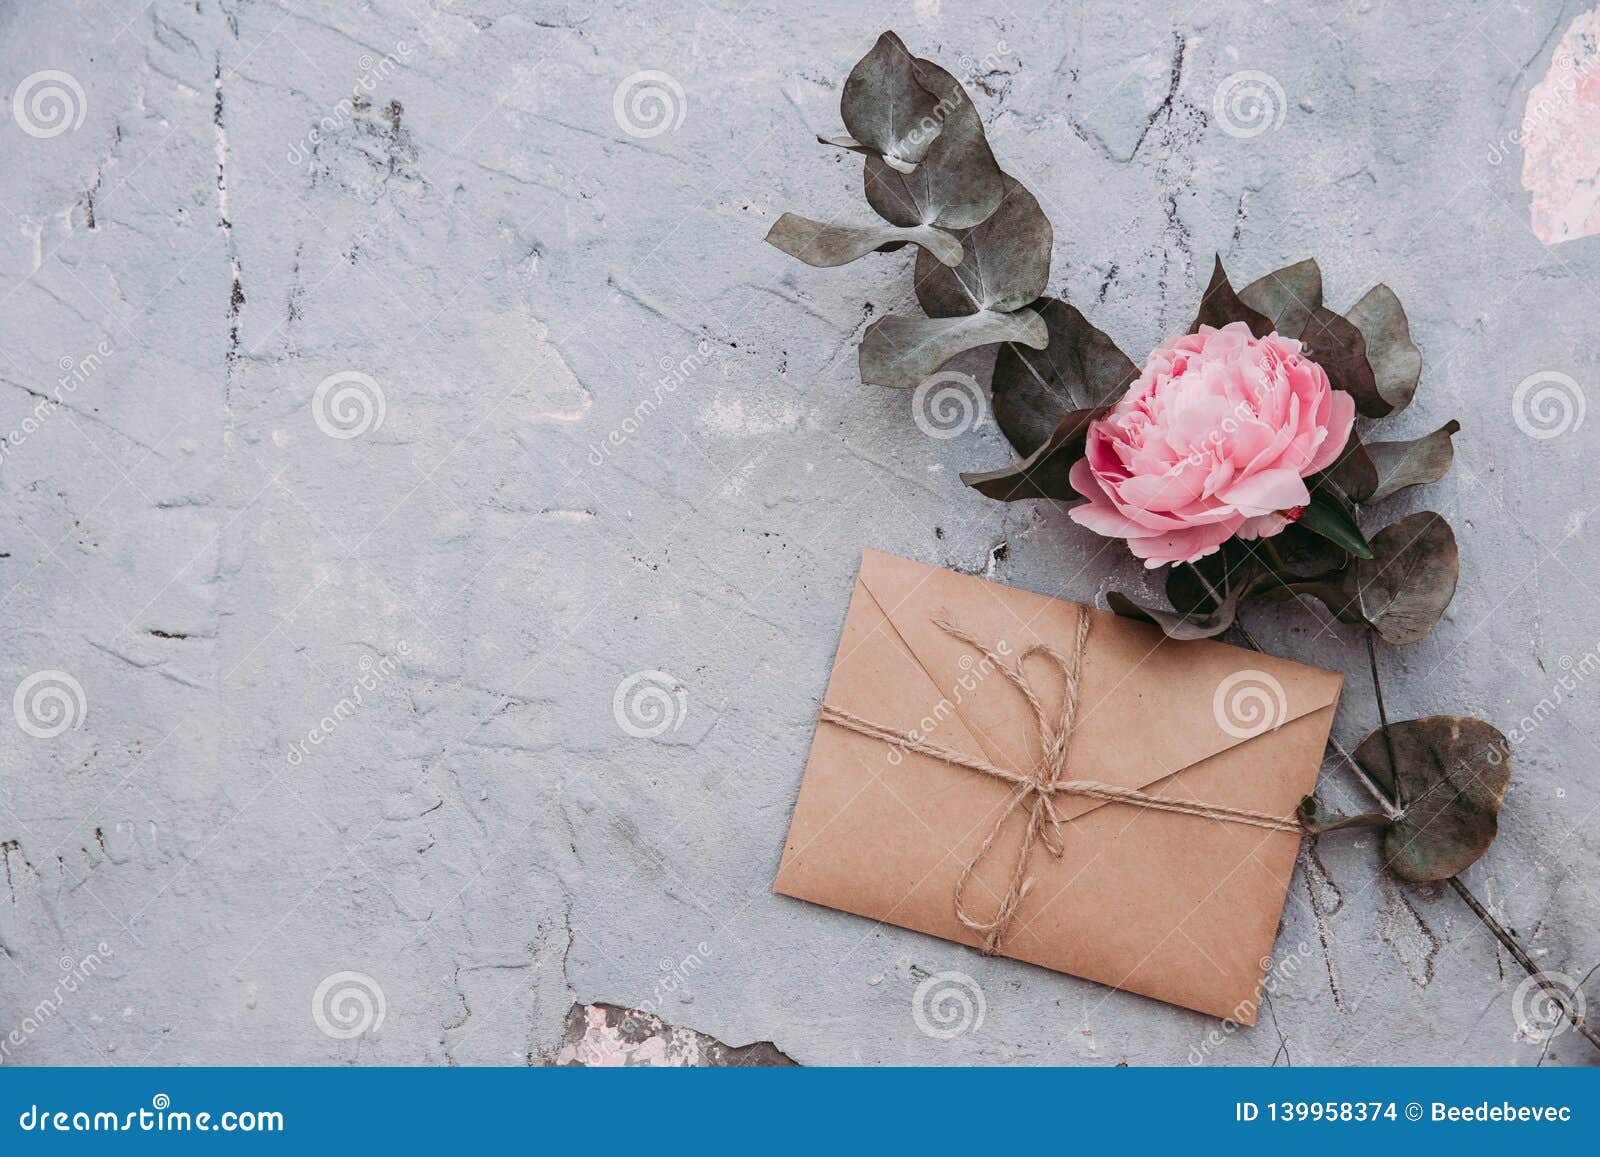 Tarjetas De Invitación De Matrimonio, Sobres Artesanales, Flores Rosas Y Hojas Verdes Sobre De Piedra Foto de archivo - Imagen de estilo, piedra: 139958374